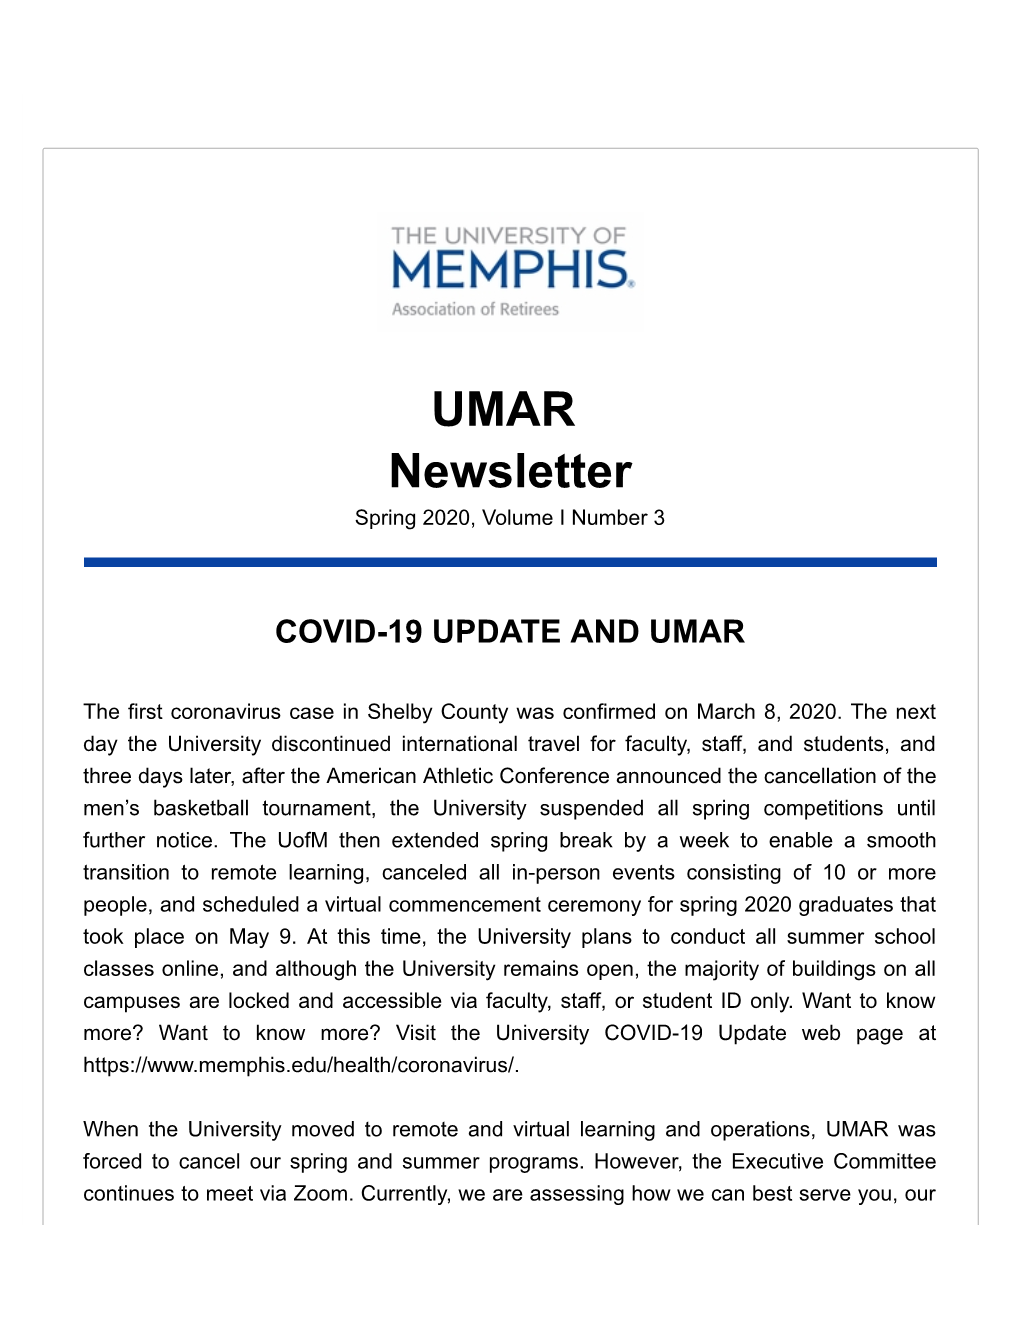 UMAR Newsletter Spring 2020, Volume I Number 3